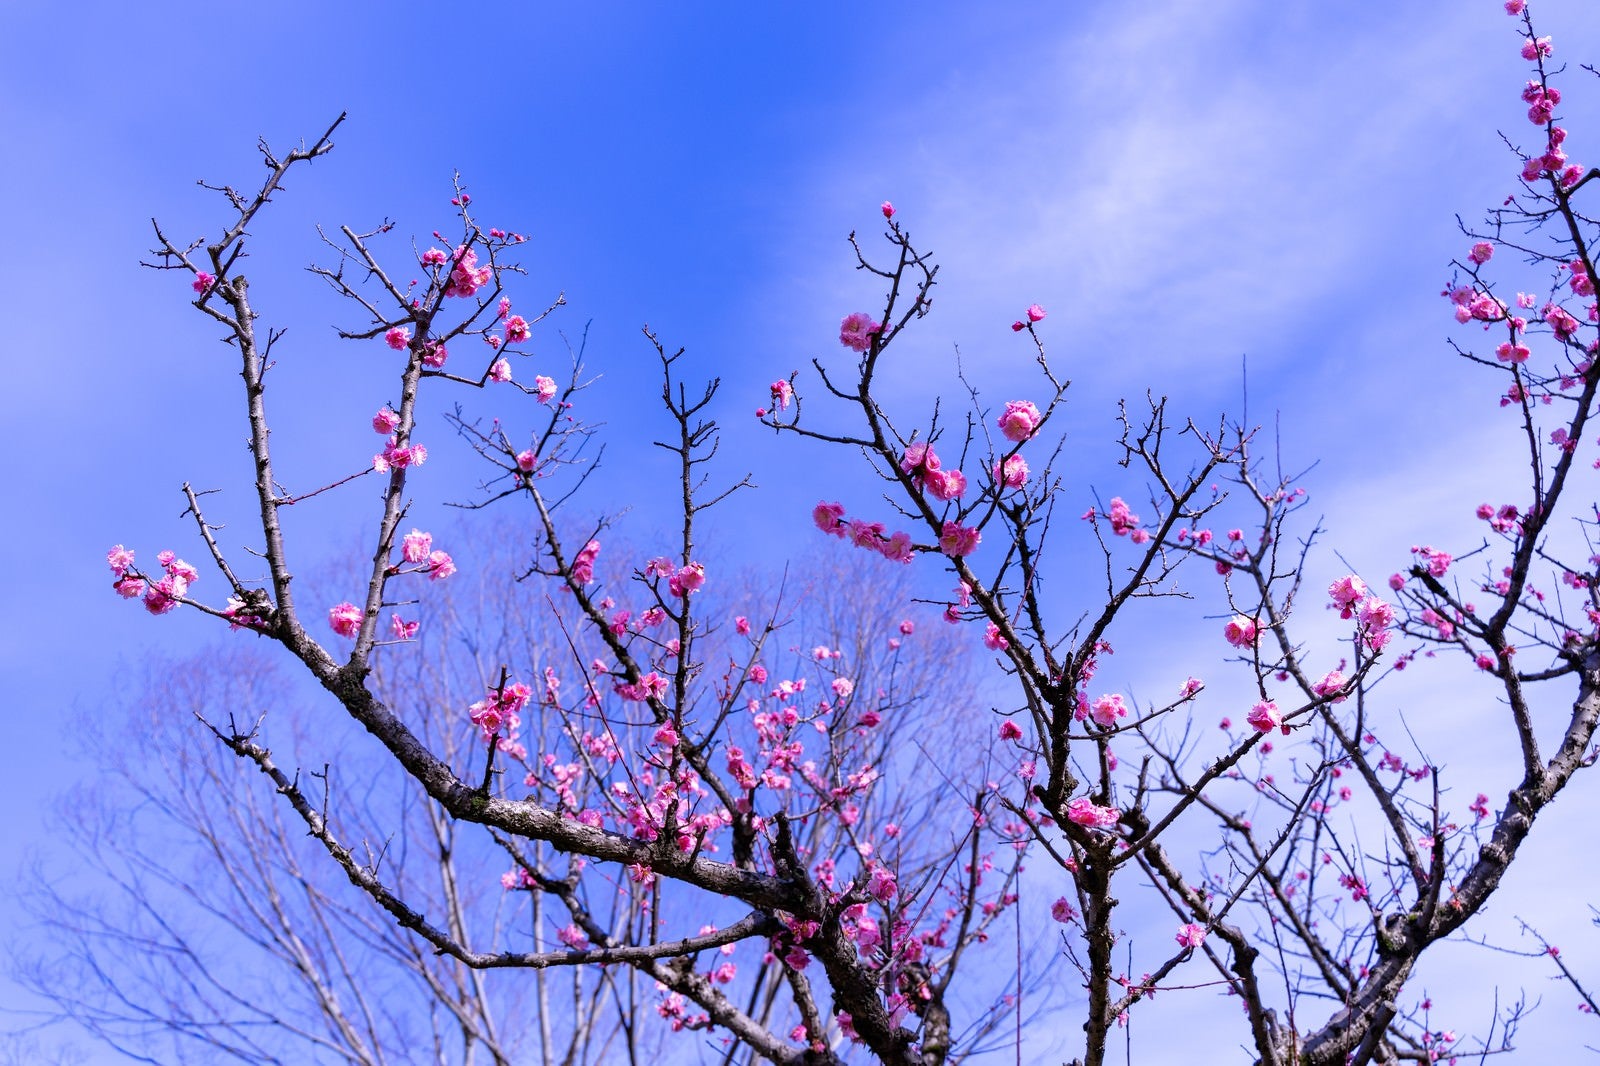 「枝につく桃色の花と青空」の写真